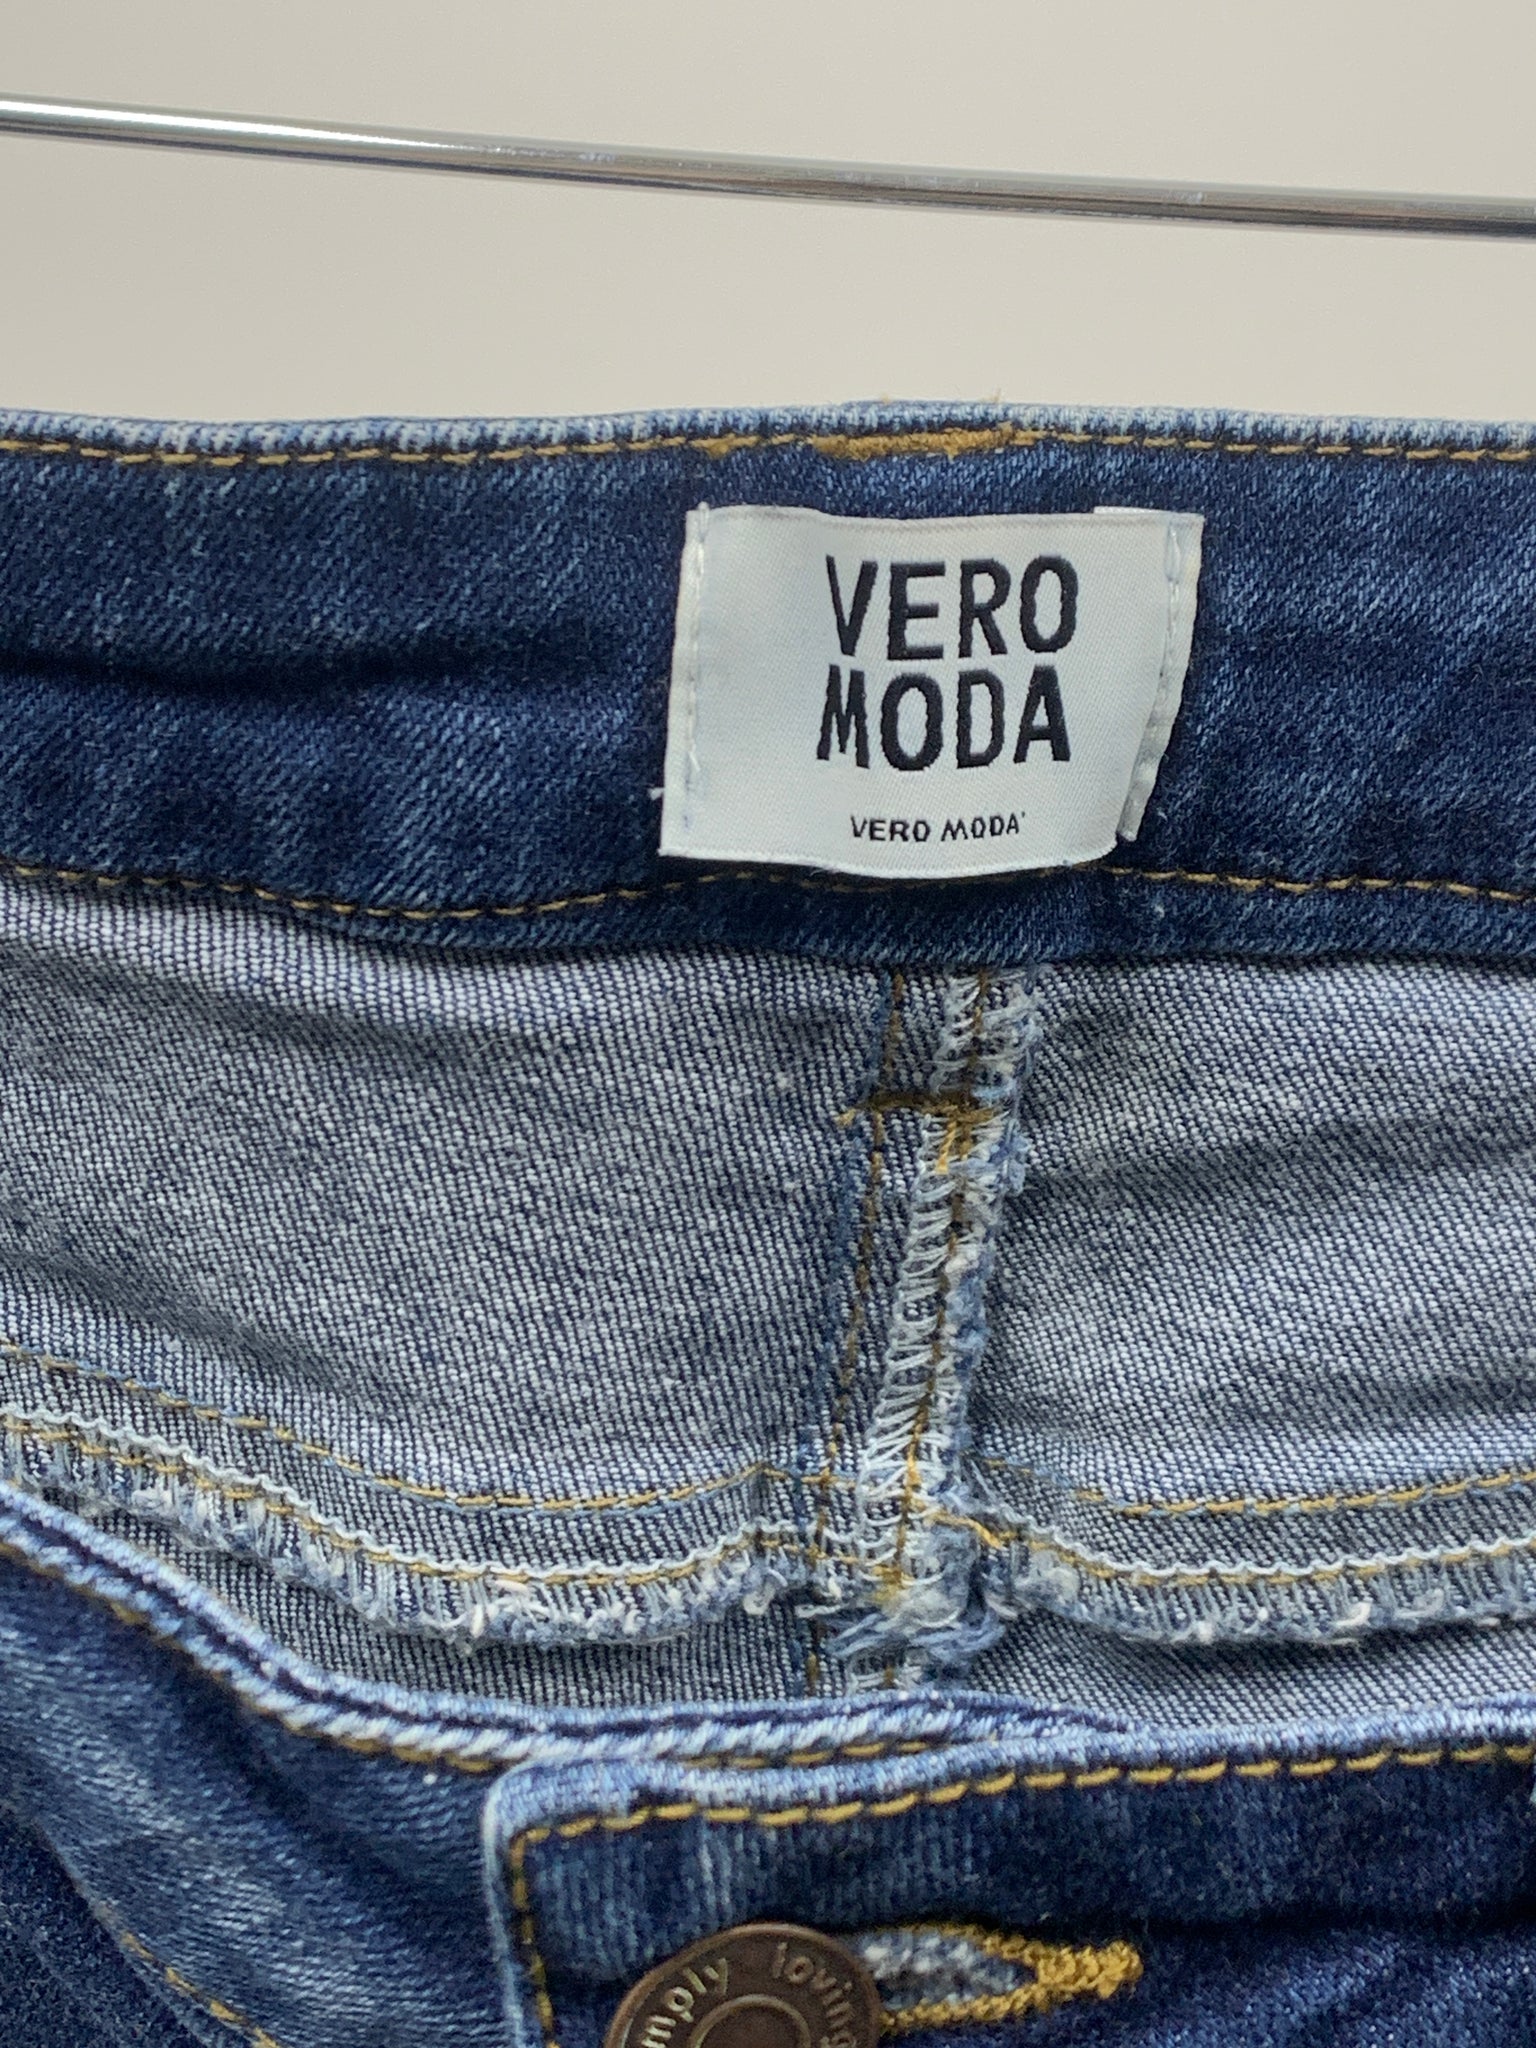 Vero moda shorts